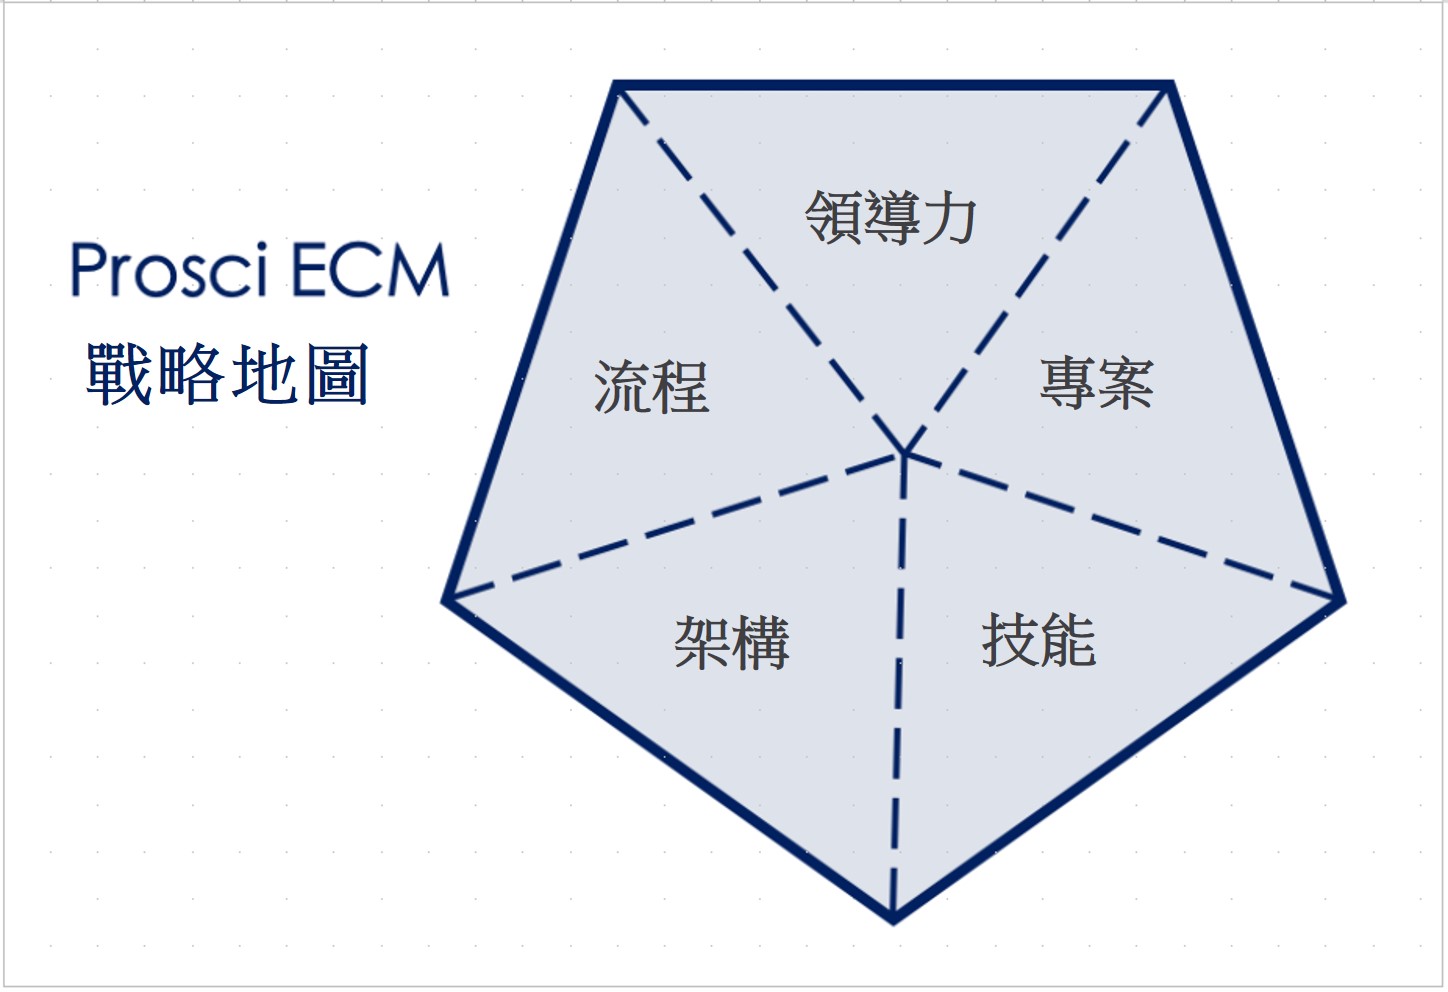 變革管理 企業變革管理(ECM) 戰略地圖